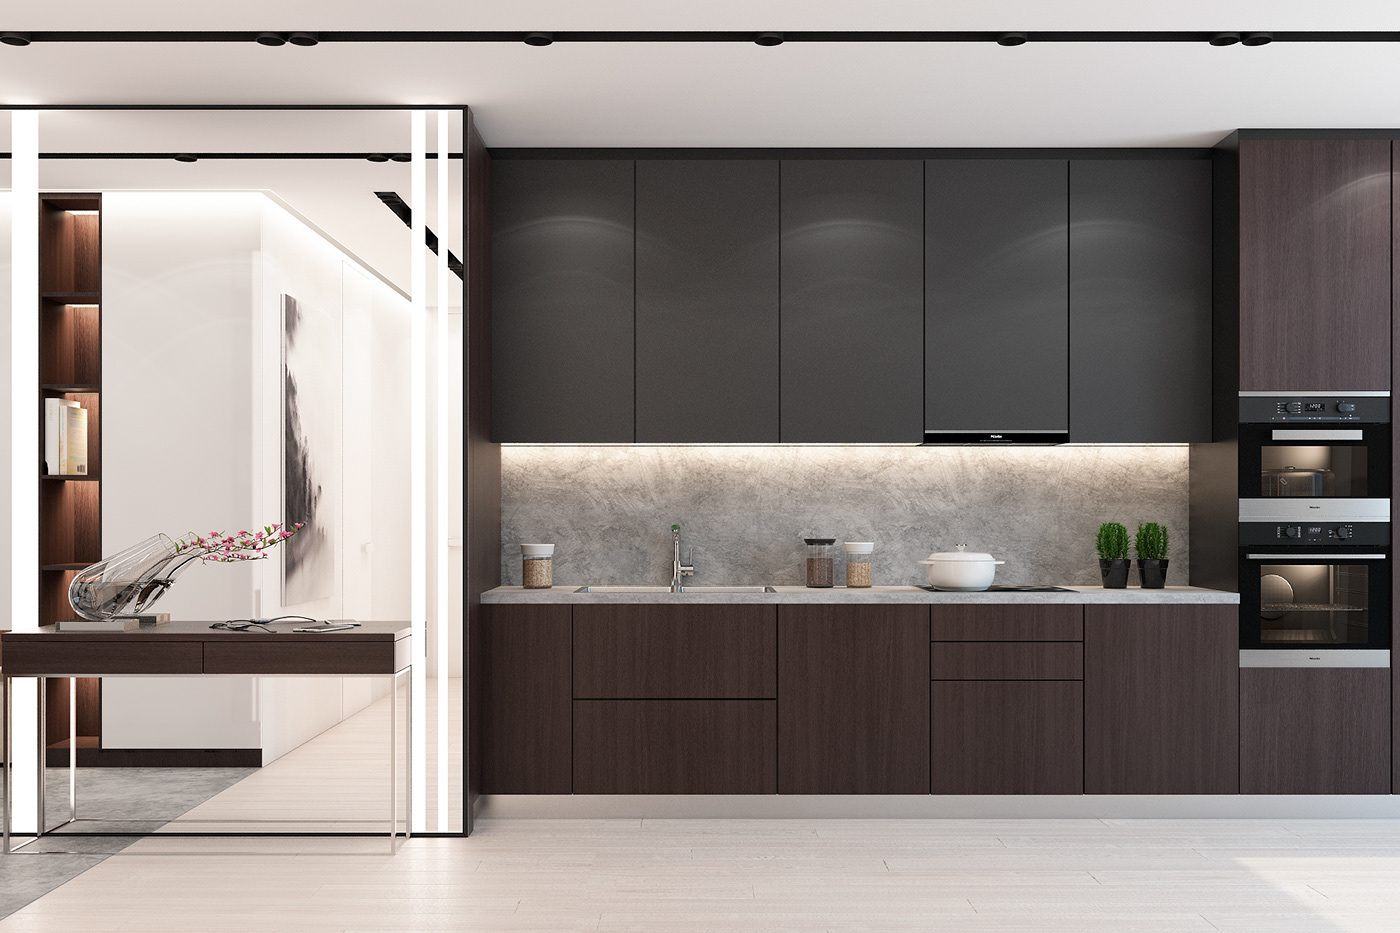 Minotti poliform BoConcept Lema interior design  Interior apartment space options design